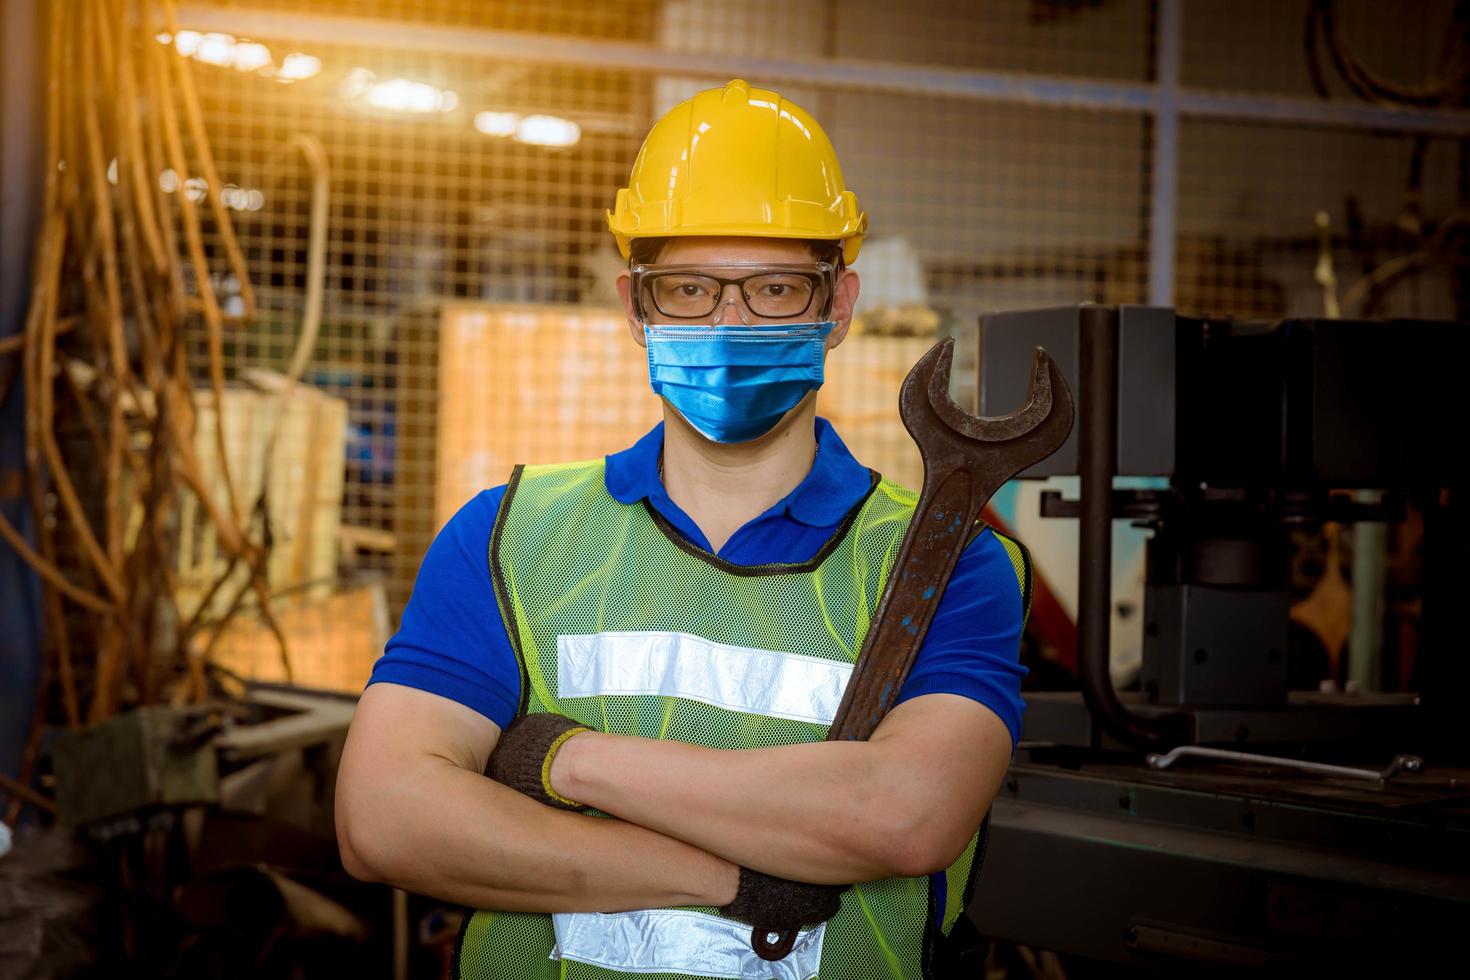 ingenjör under inspektion och kontroll av produktionsprocess på fabriksstation som håller en skruvmejsel genom att bära säkerhetsmask för att skydda mot föroreningar och virus i fabriken. foto